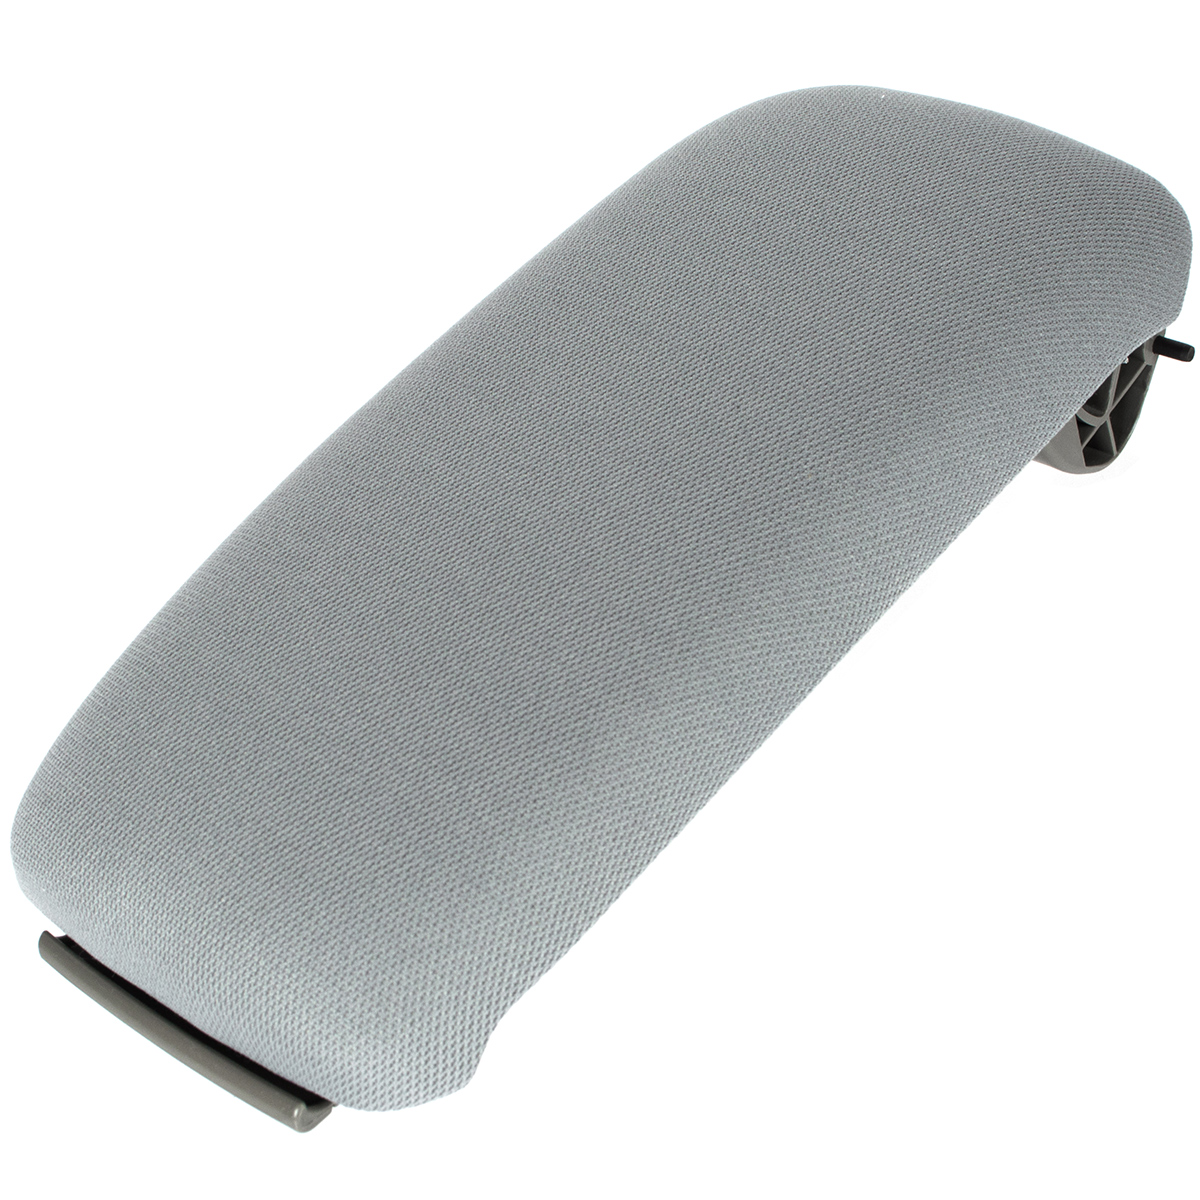 Mittelarmlehne Armlehne Abdeckung / Deckel mit Stoffbezug Grau für